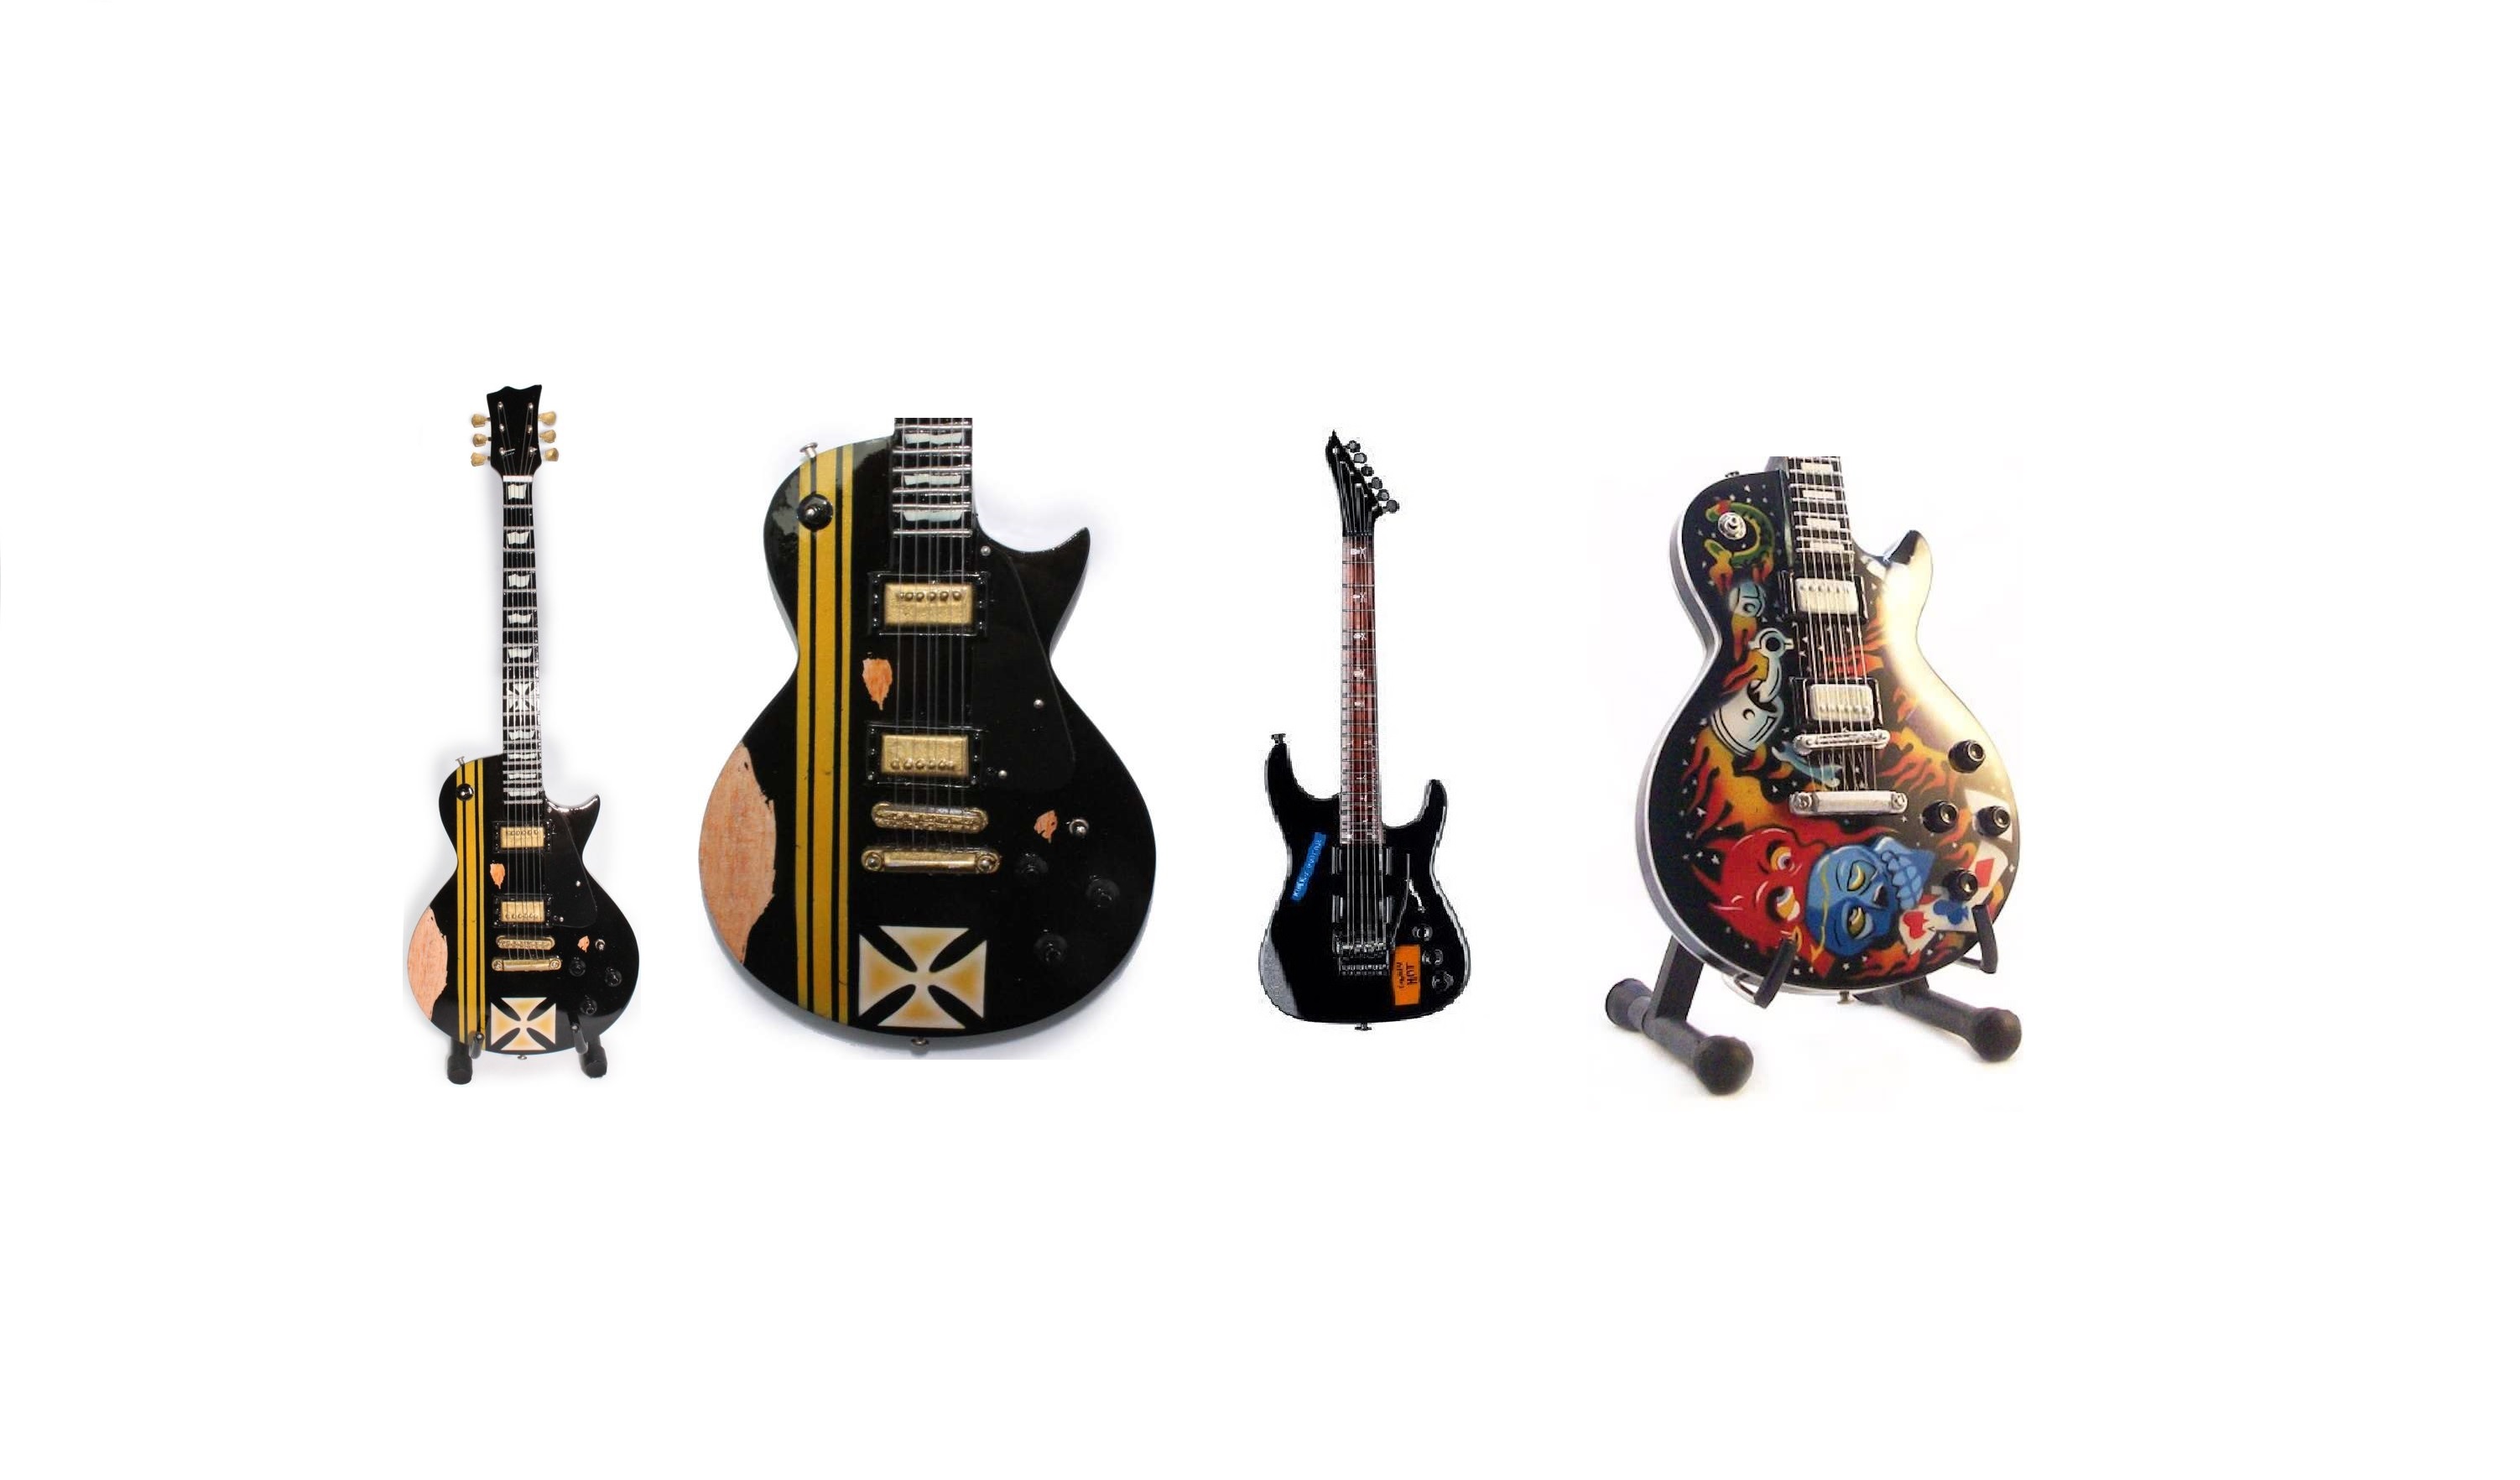 Rubriek Victor krant Miniatuur gitaar Metallica kopen: verkrijgbare modellen - GitaarGabber